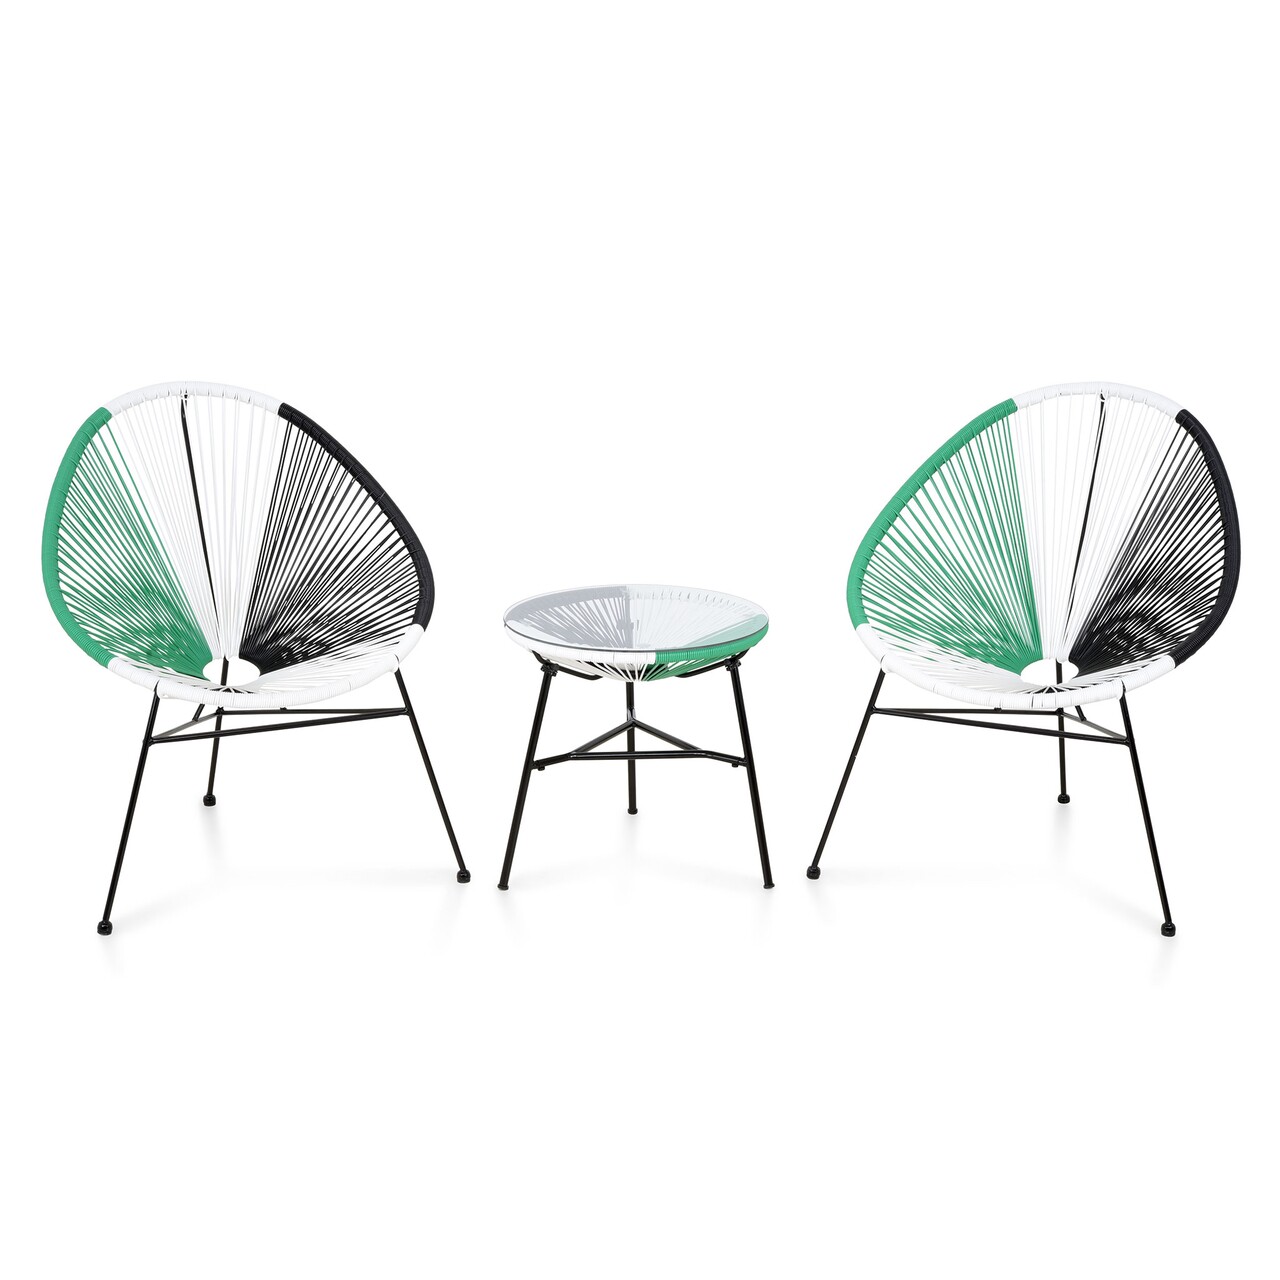 Corfu kerti terasz/bútor szett 2 fotel + asztalka, acél, zöld/fehér/fekete